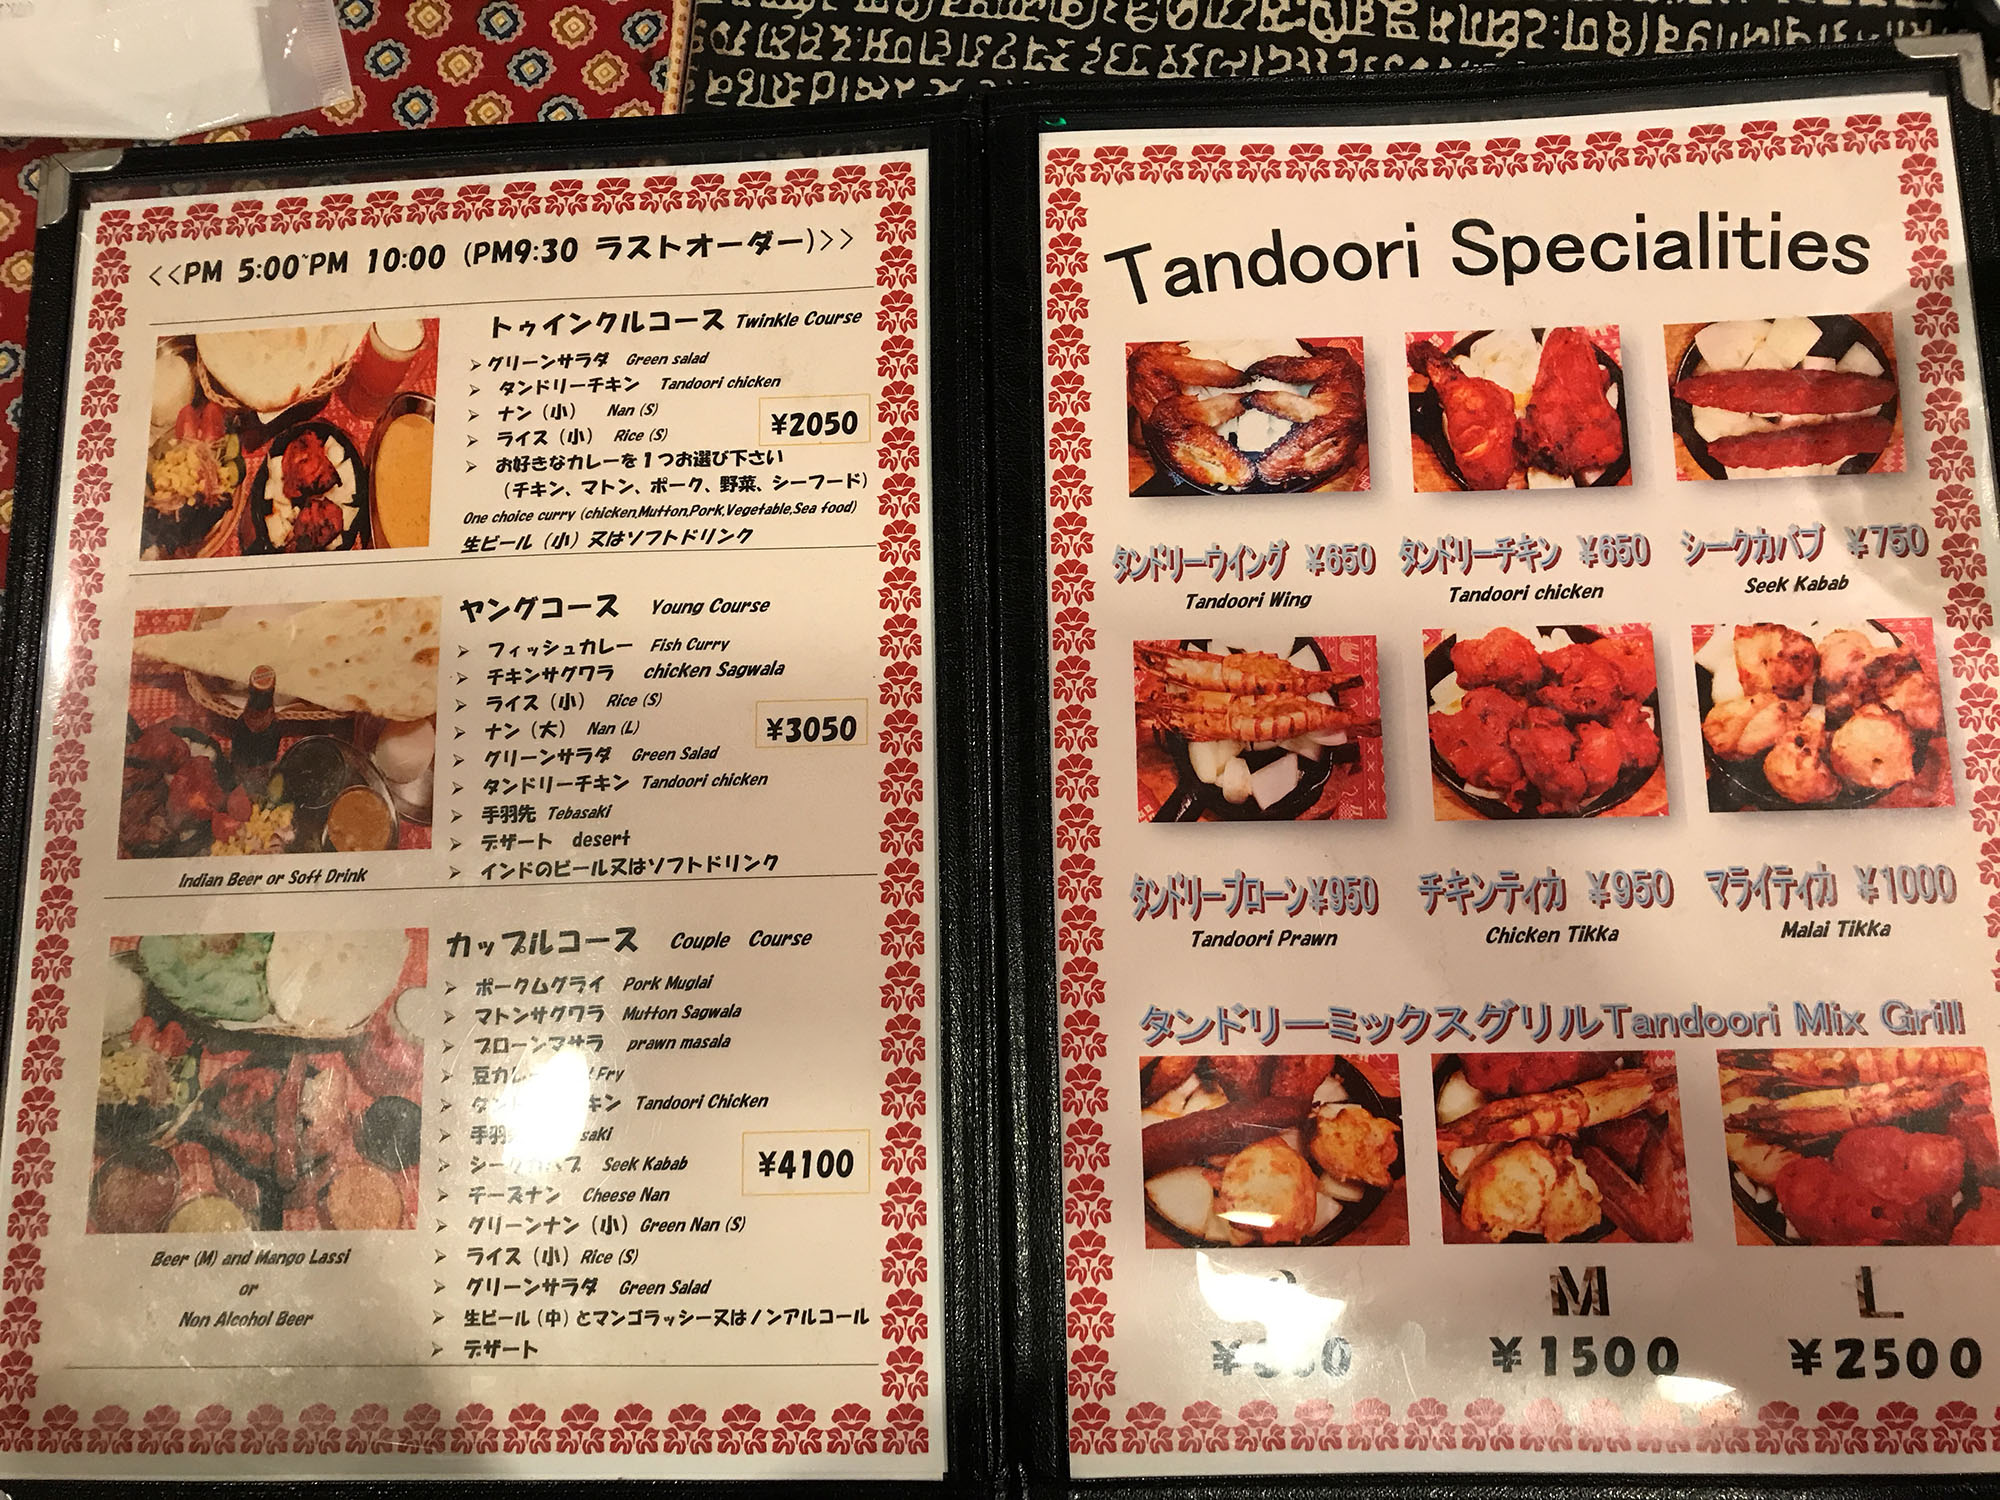 アーナンド インドカレー 大阪 堺市 鳳 インド料理はランチやディナーにもおすすめ、お持ち帰りもできる。